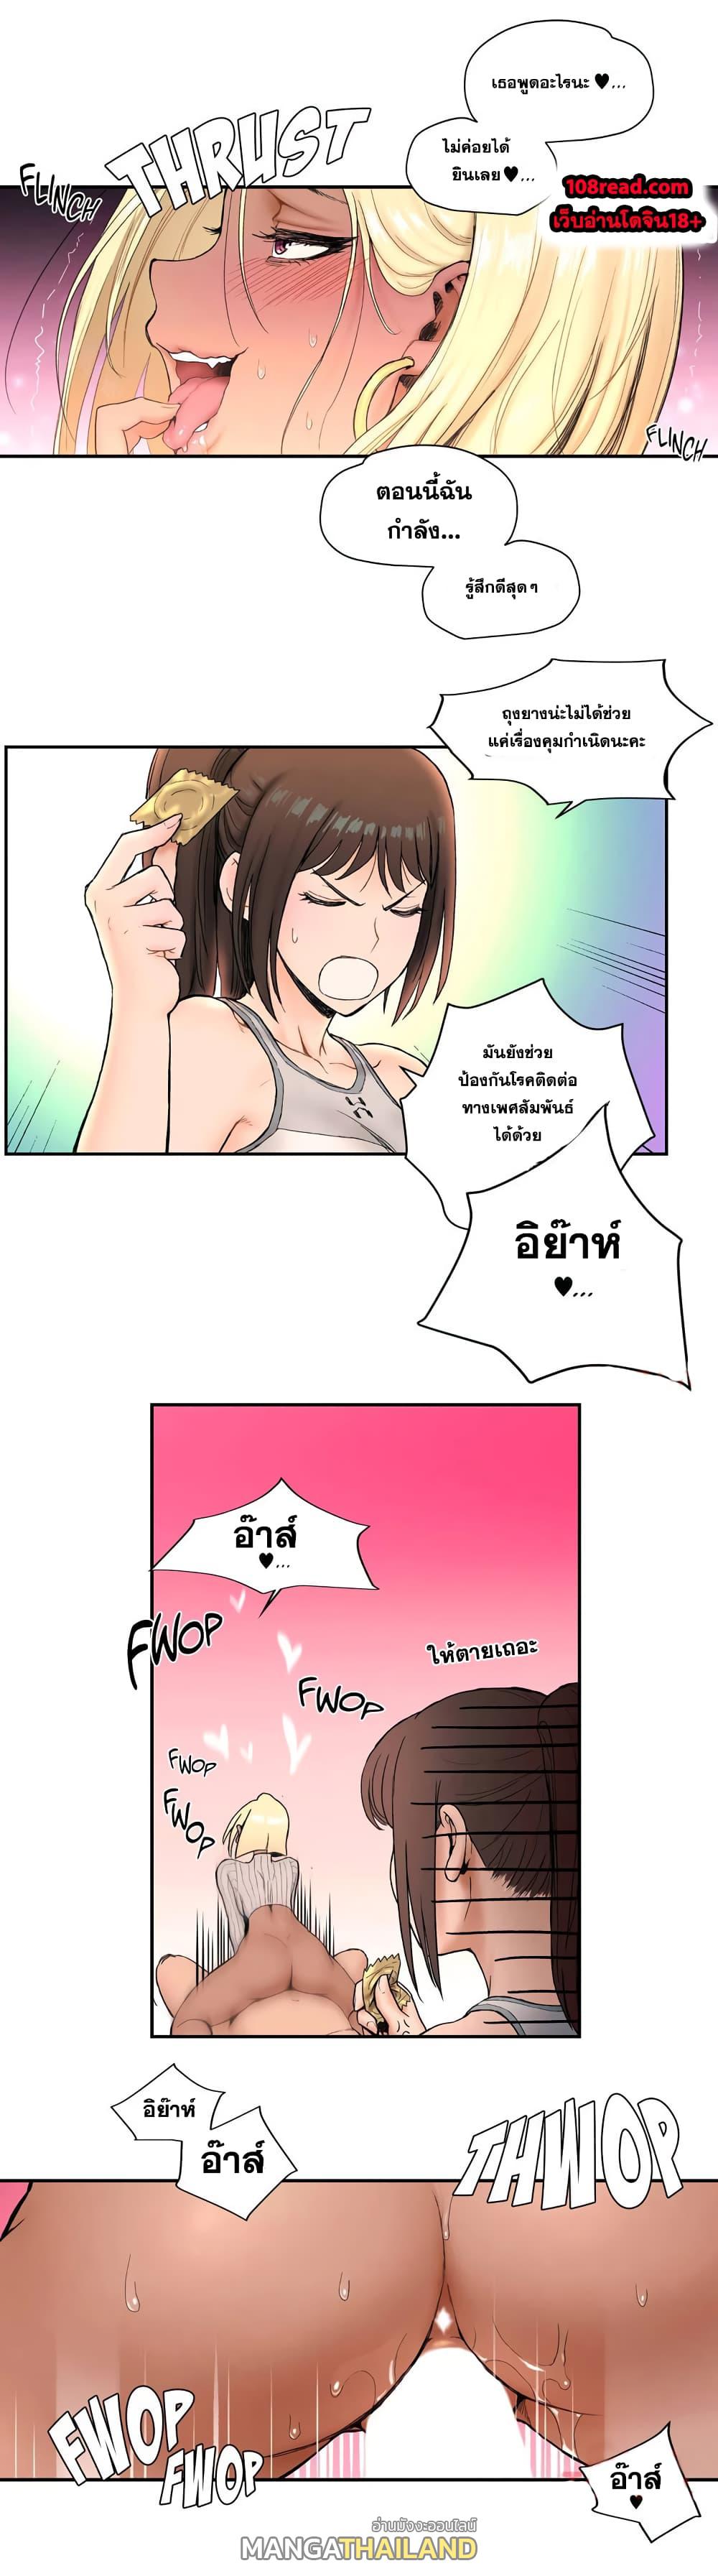 Sexercise ตอนที่ 5 แปลไทย รูปที่ 6